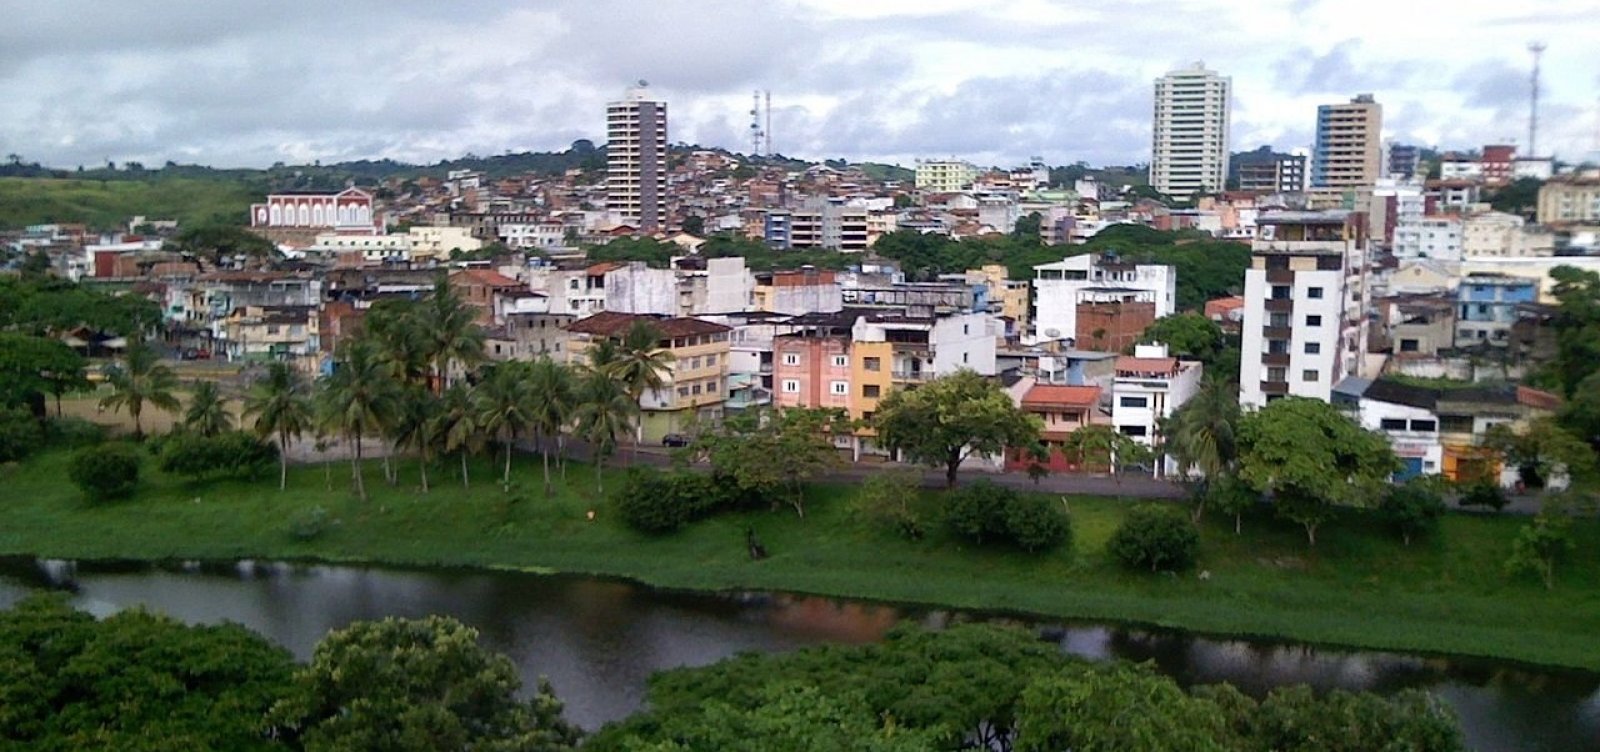 Homens desaparecem após venderem carro no sul da Bahia